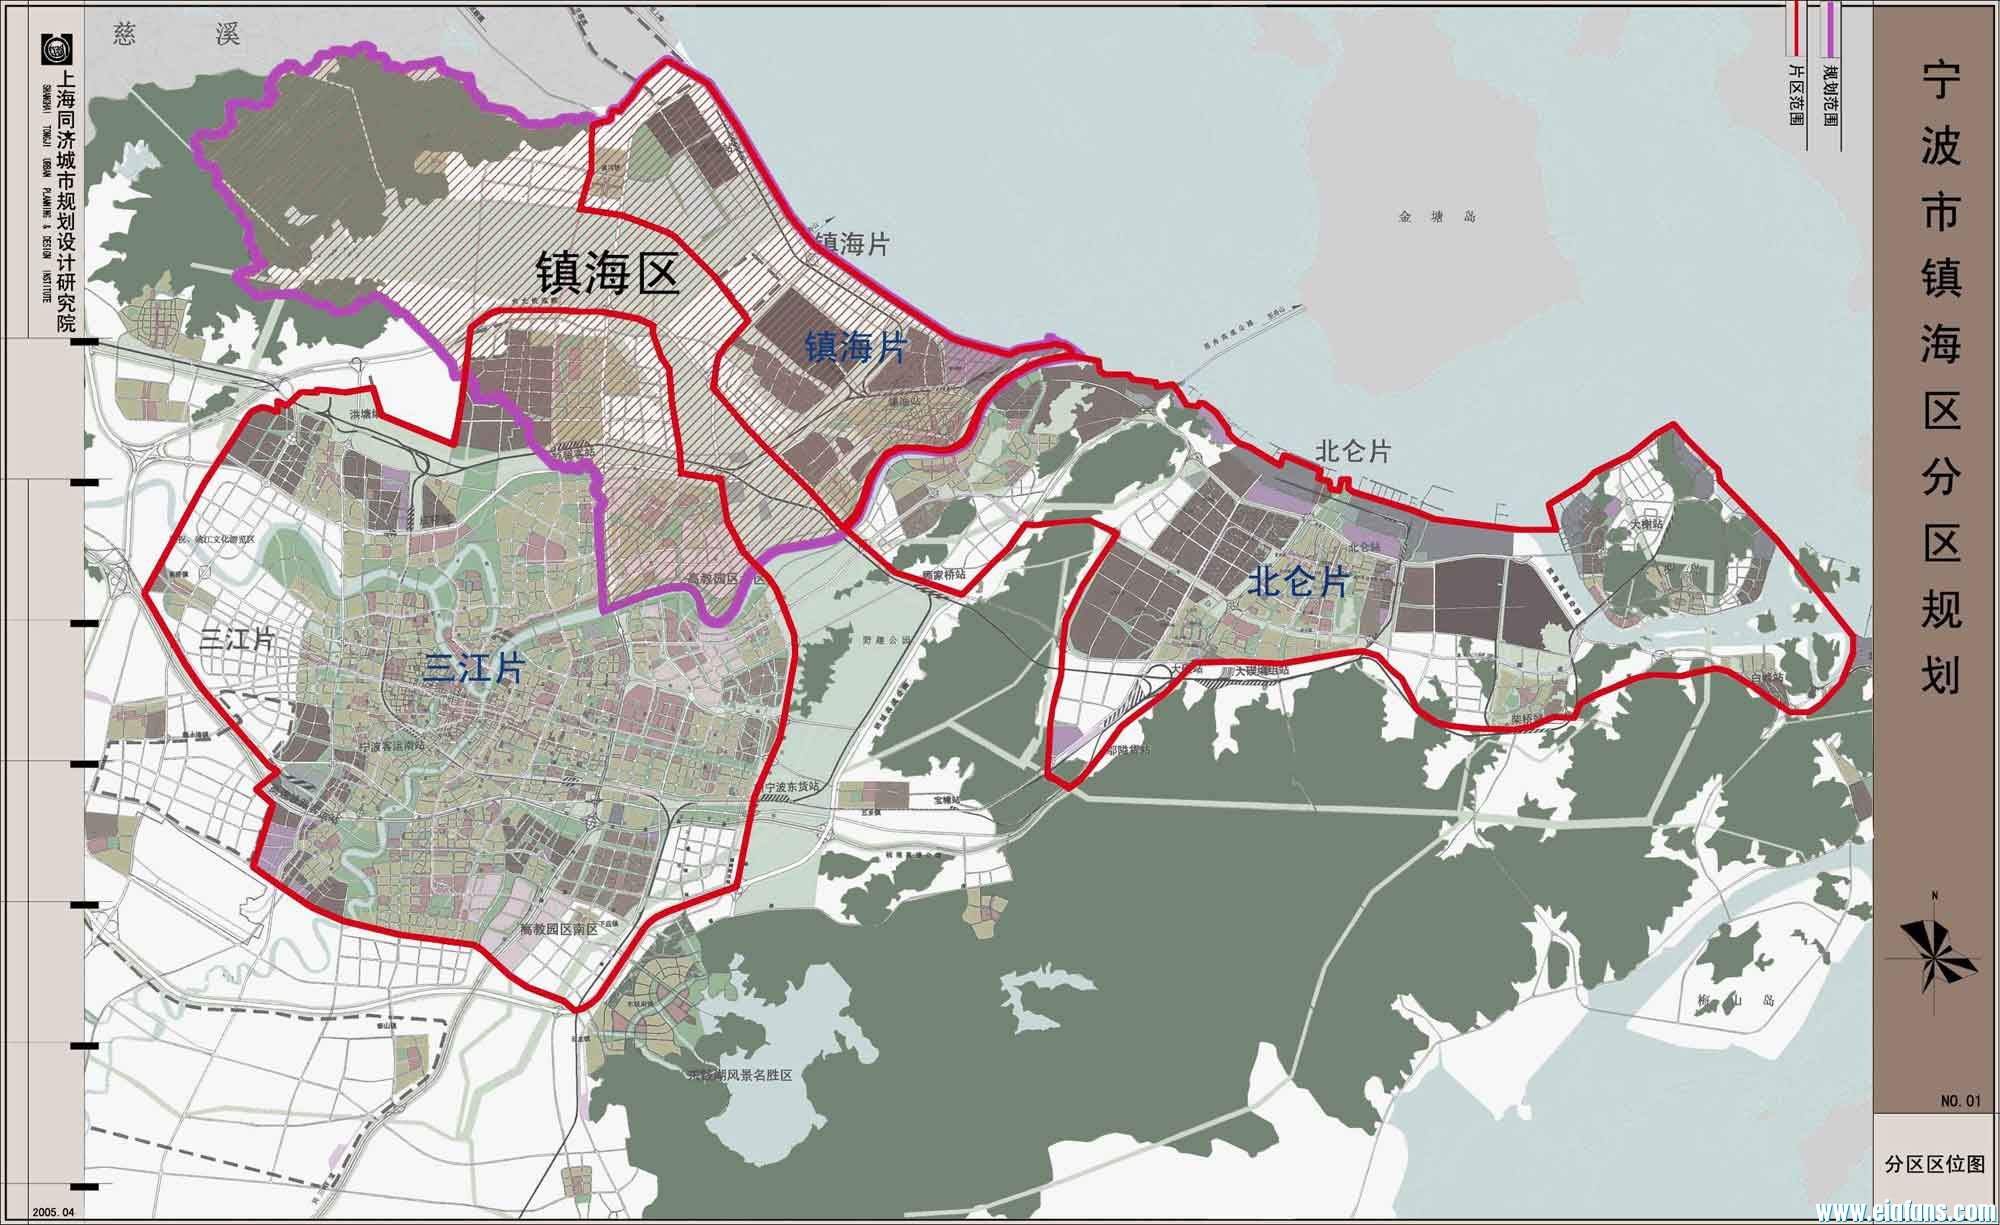 老城次分区 包括镇海老城,部分蛟川街道和镇海经济开发区图片